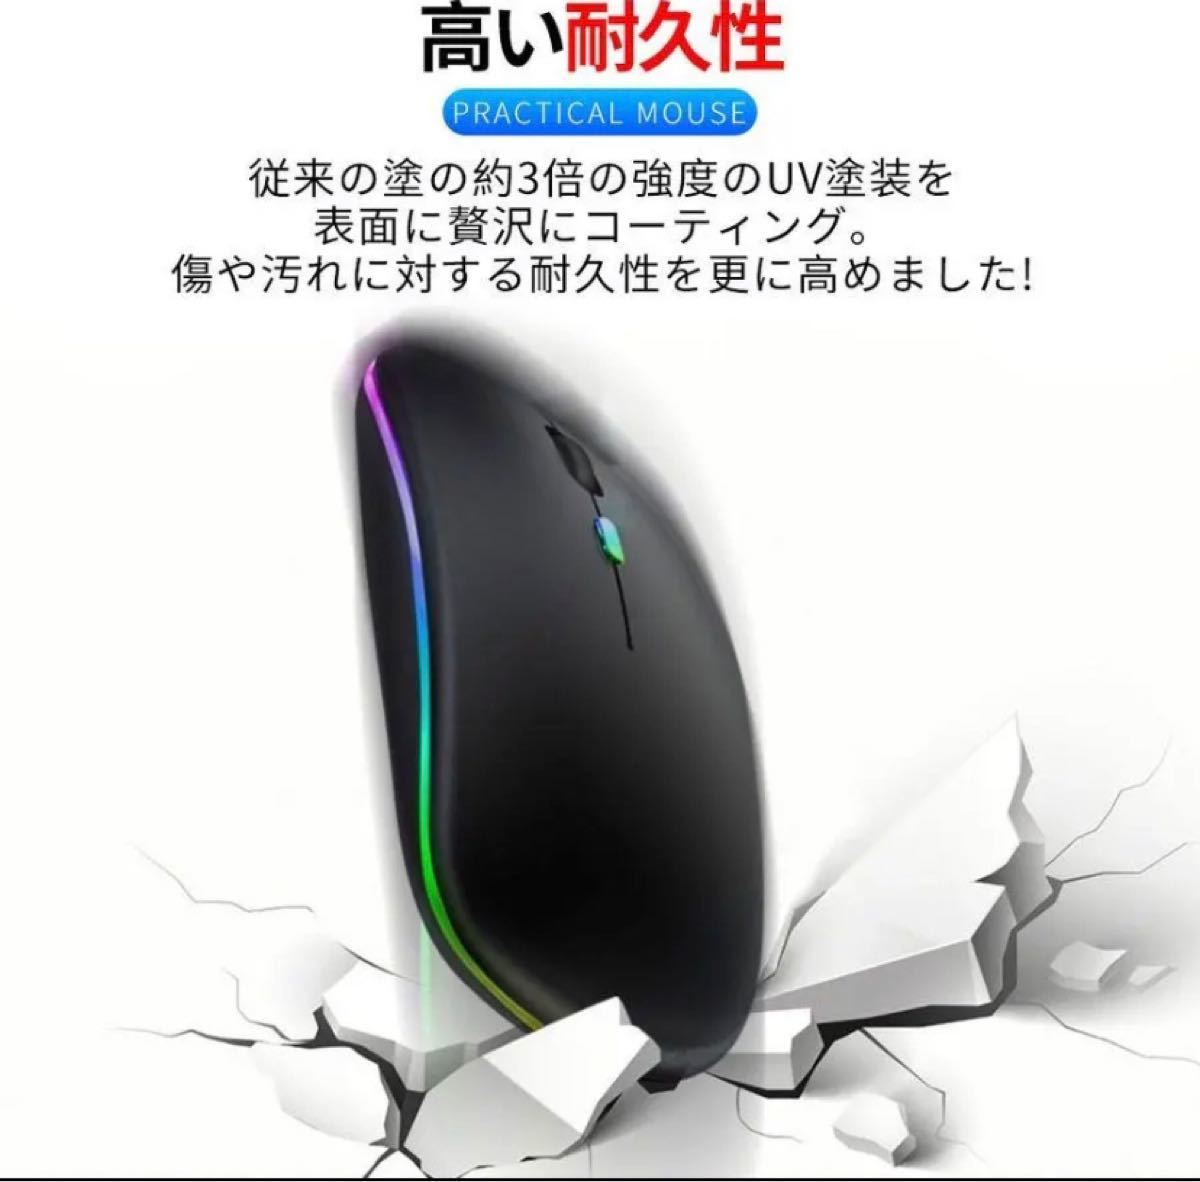 マウス ワイヤレスマウス 無線マウス USB充電式